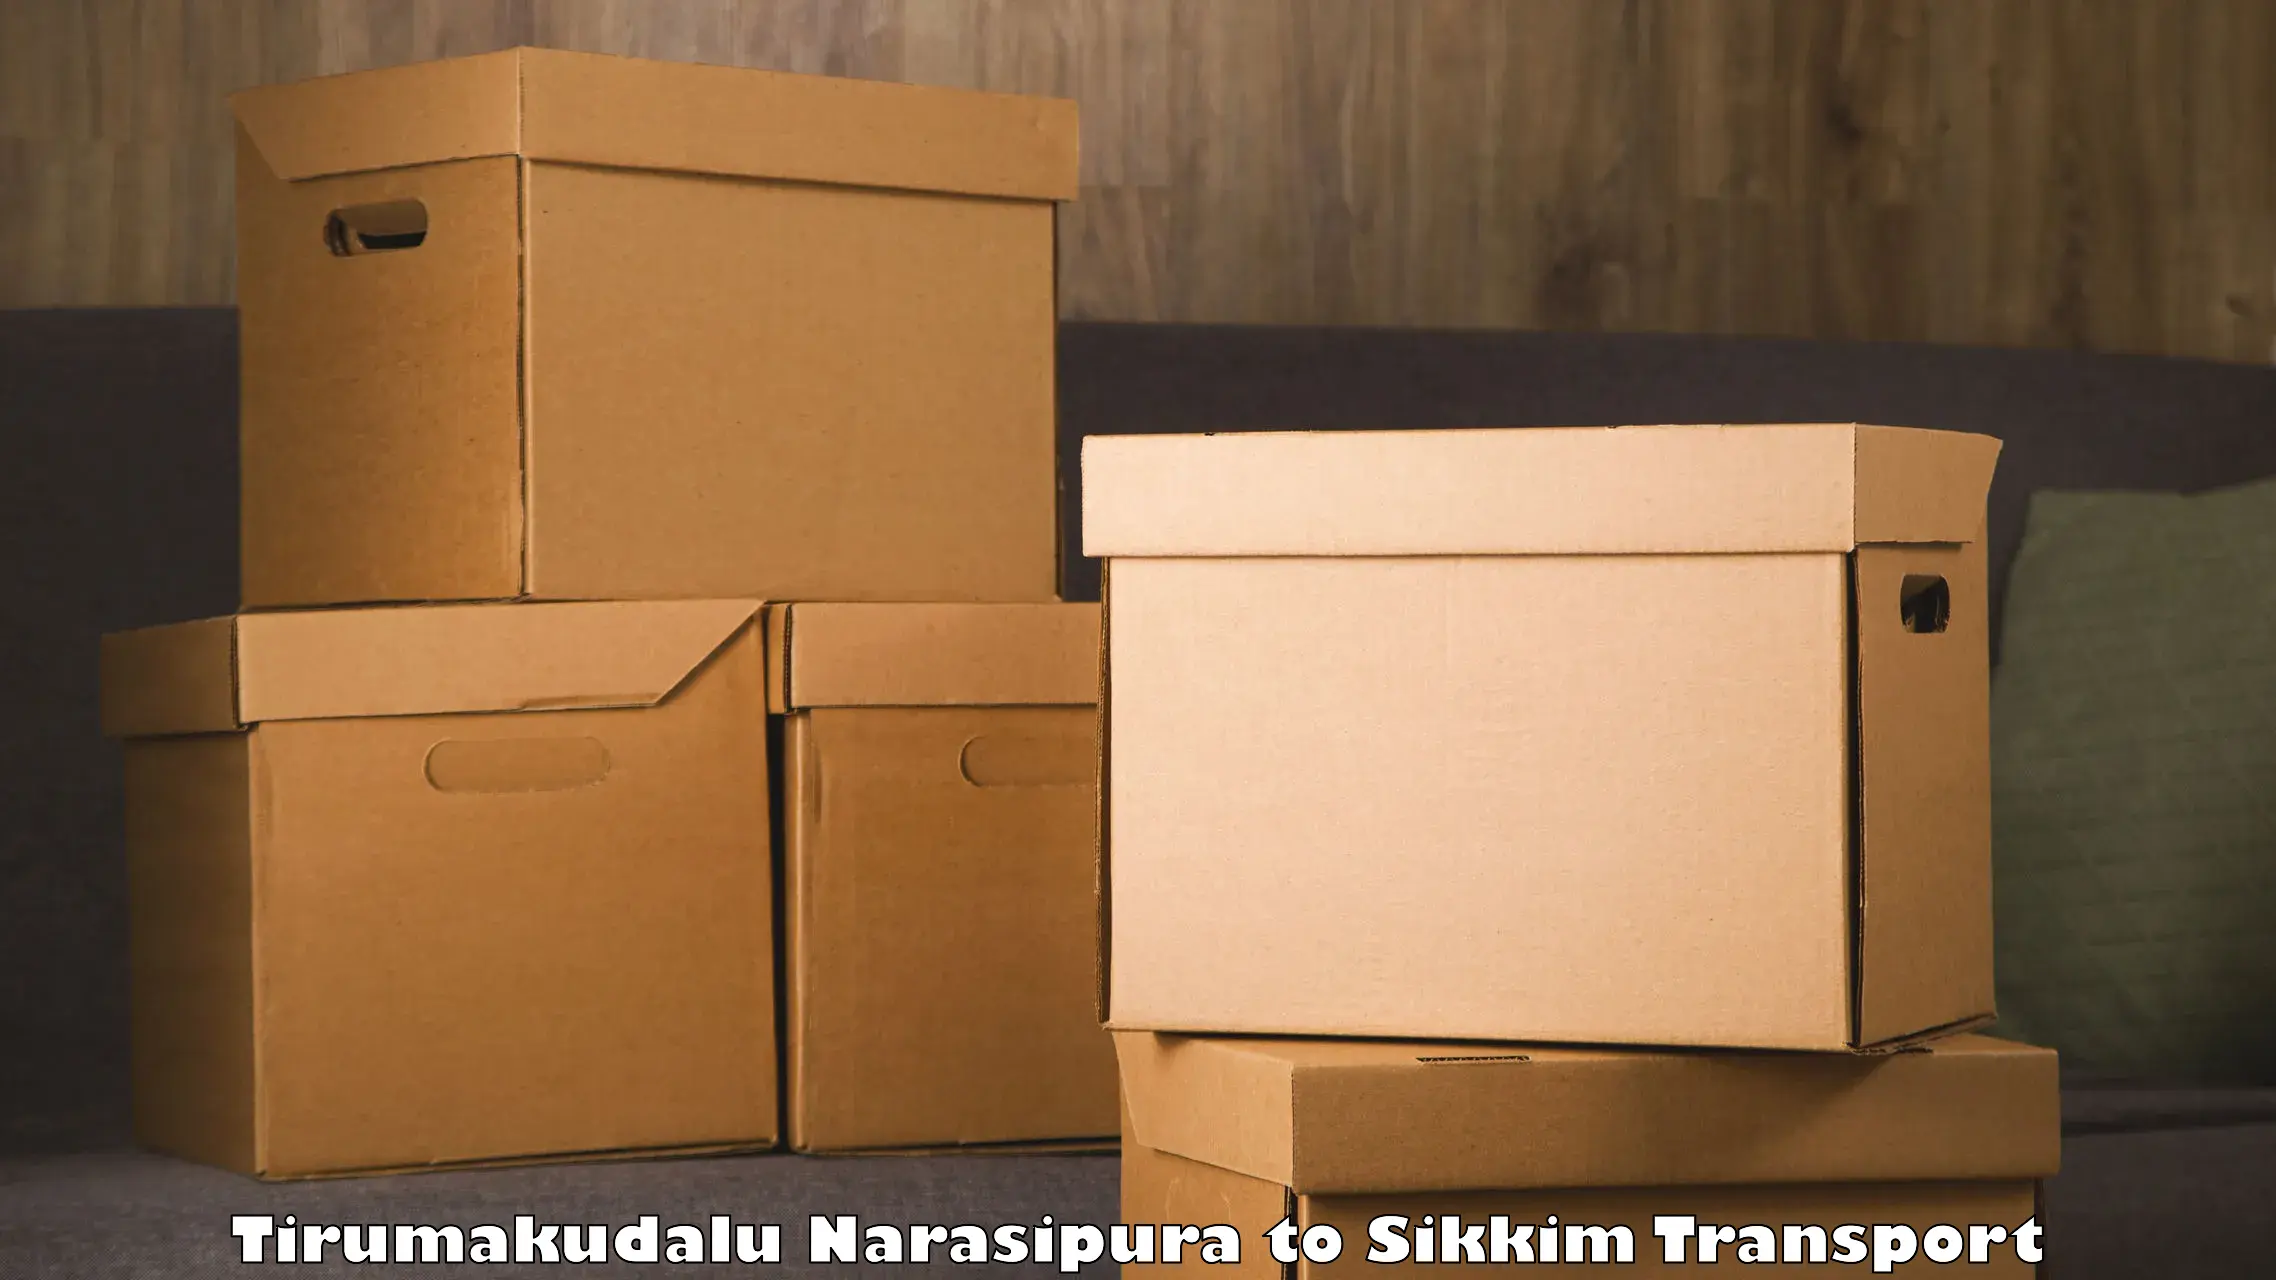 Lorry transport service Tirumakudalu Narasipura to Mangan